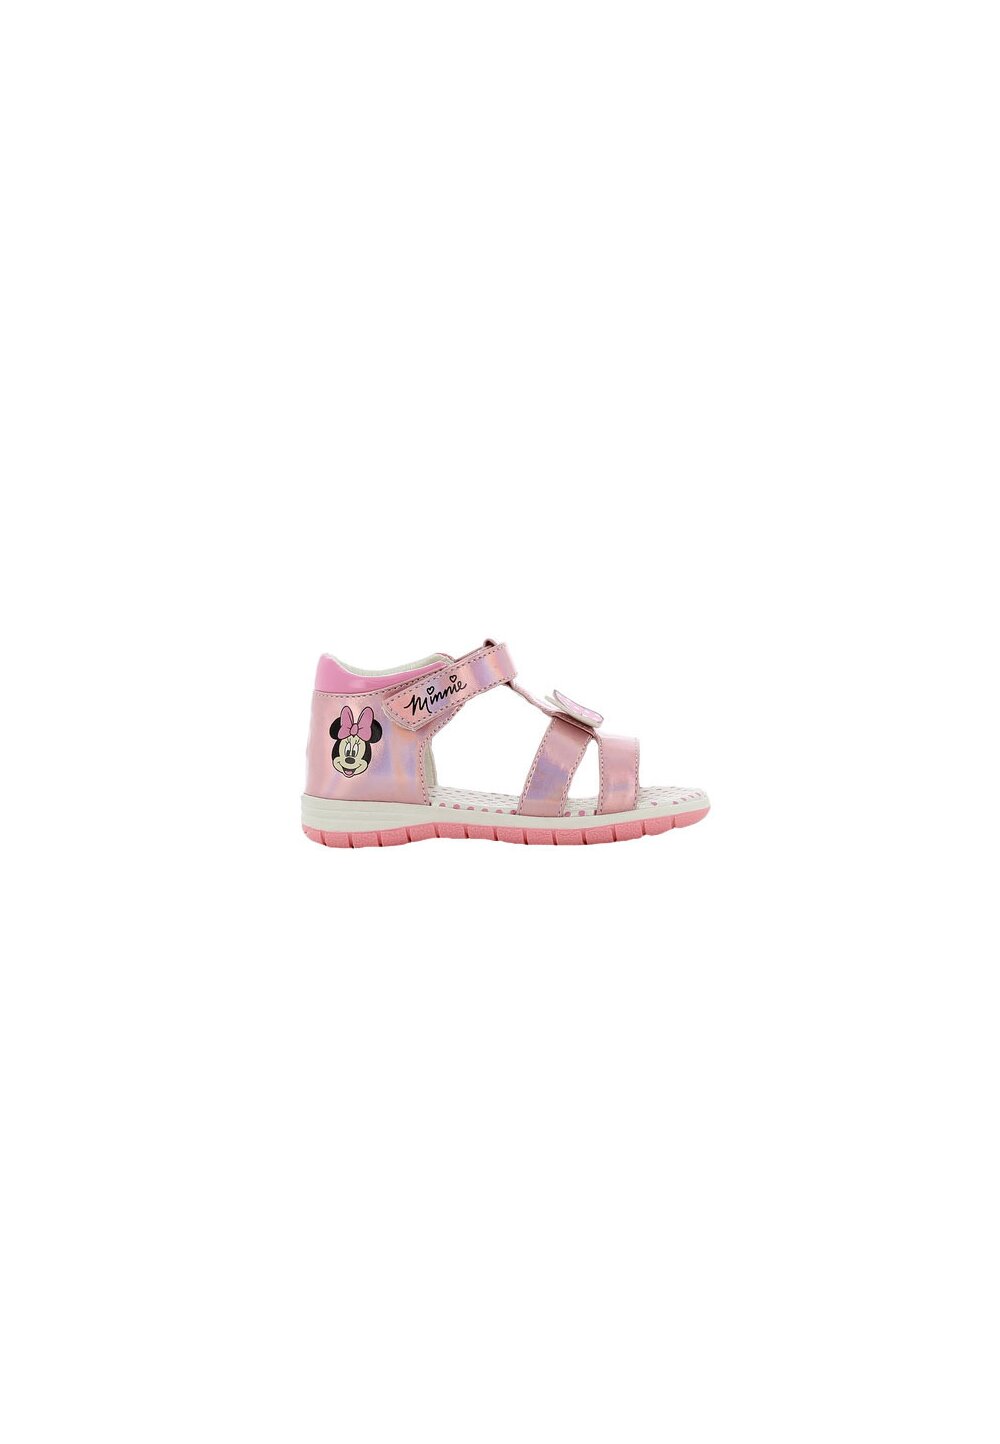 Sandale fete, cu scai din piele ecologica, Minnie, roz metalic